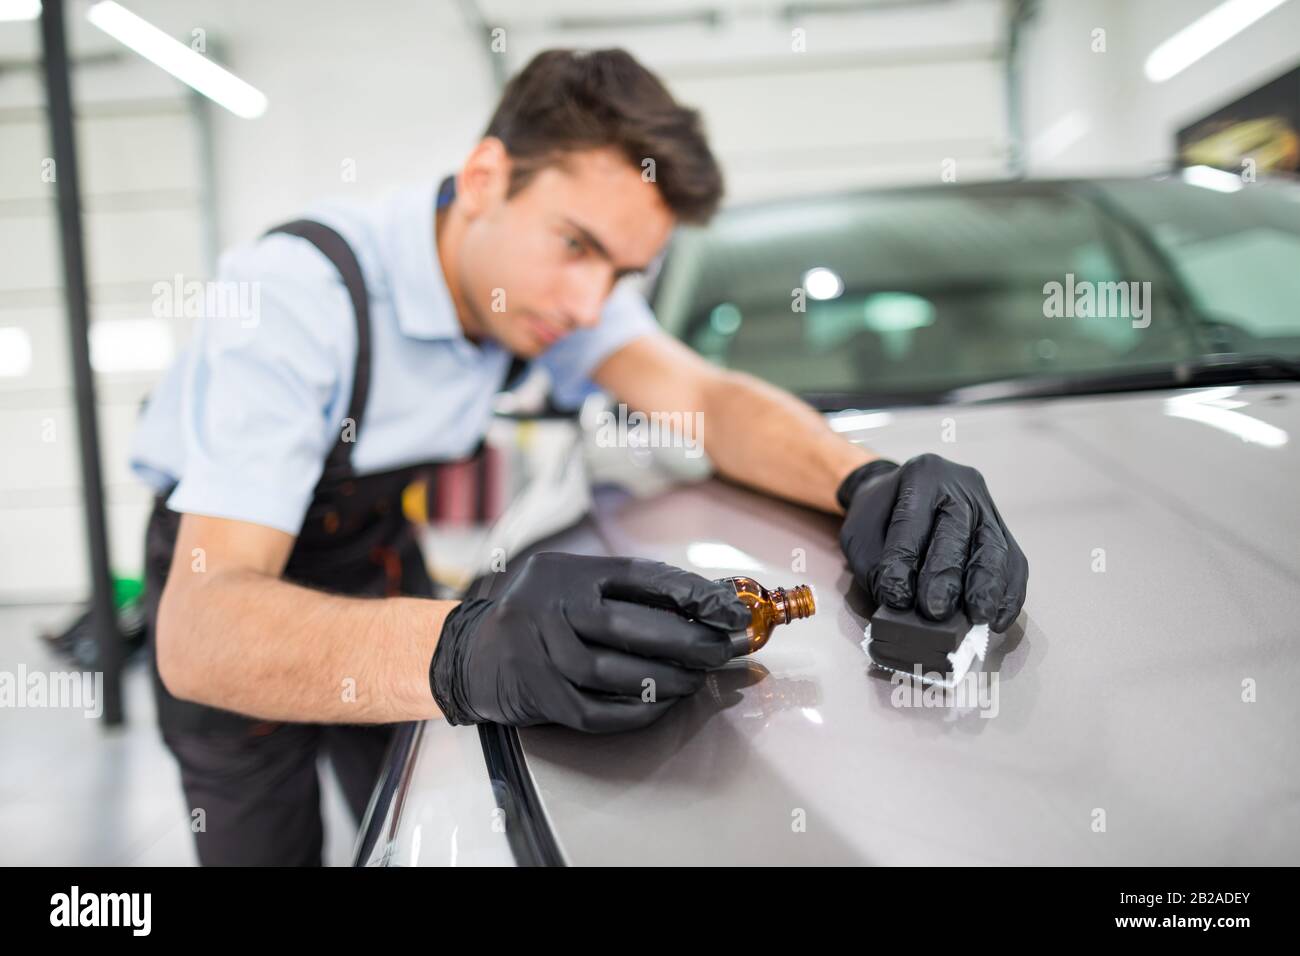 Détails de voiture - l'homme applique un revêtement de protection nano à la voiture. Mise au point sélective. Banque D'Images